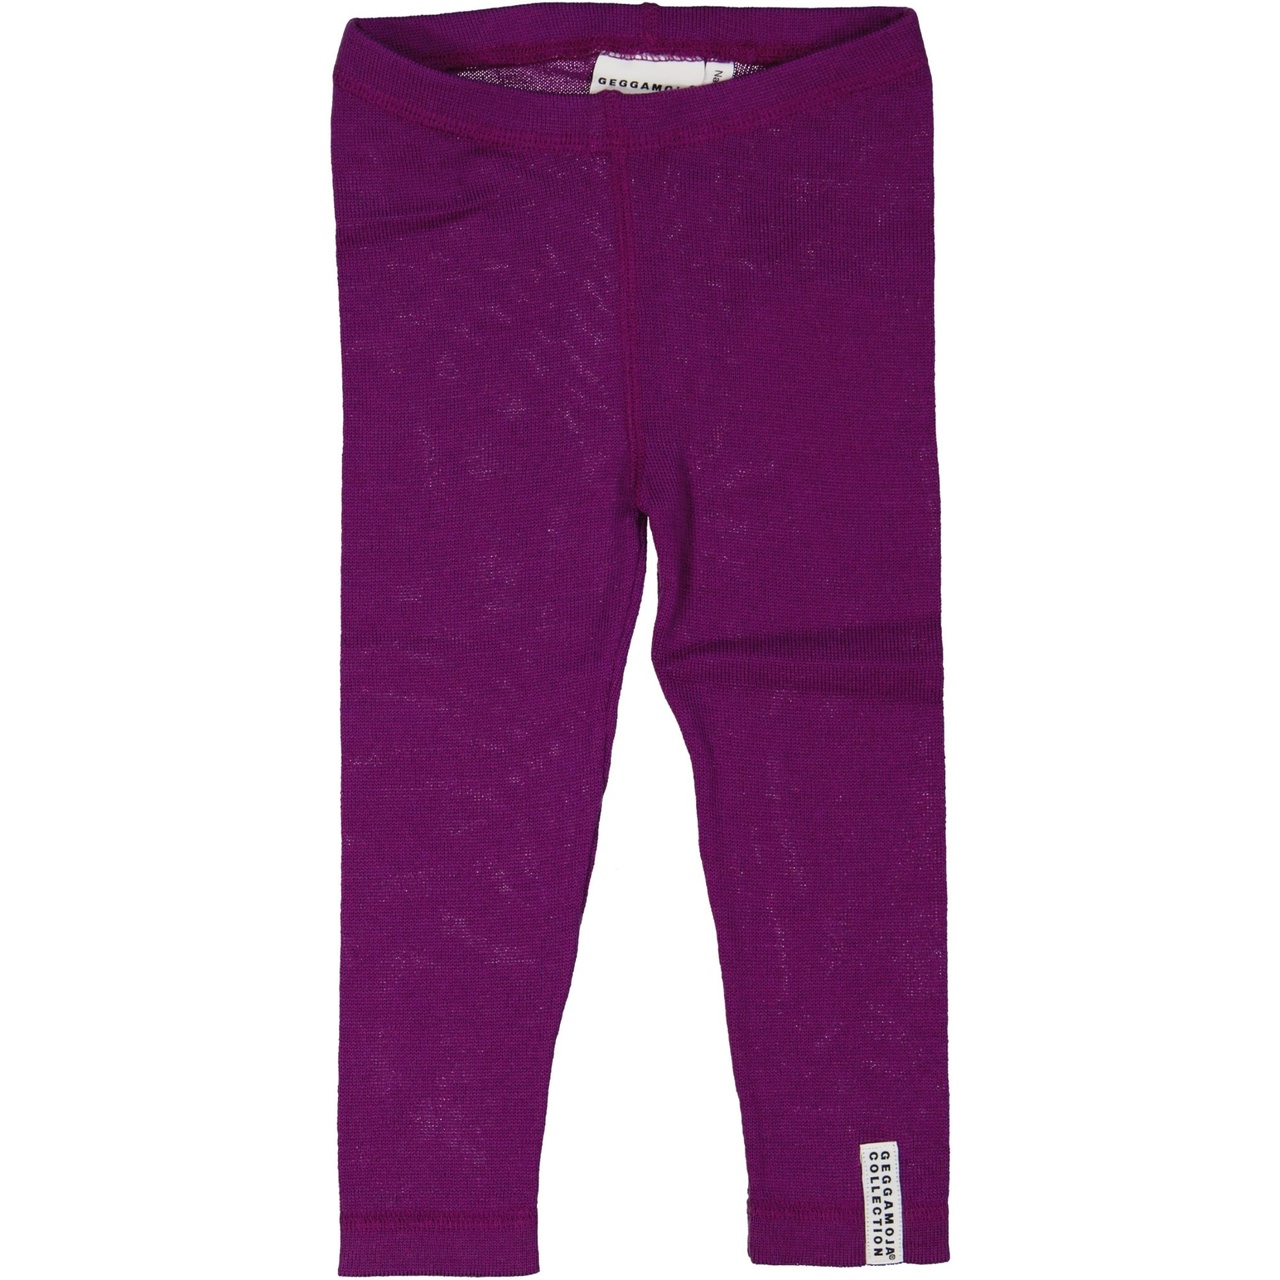 Merino wool leggings Deep purple  62/68